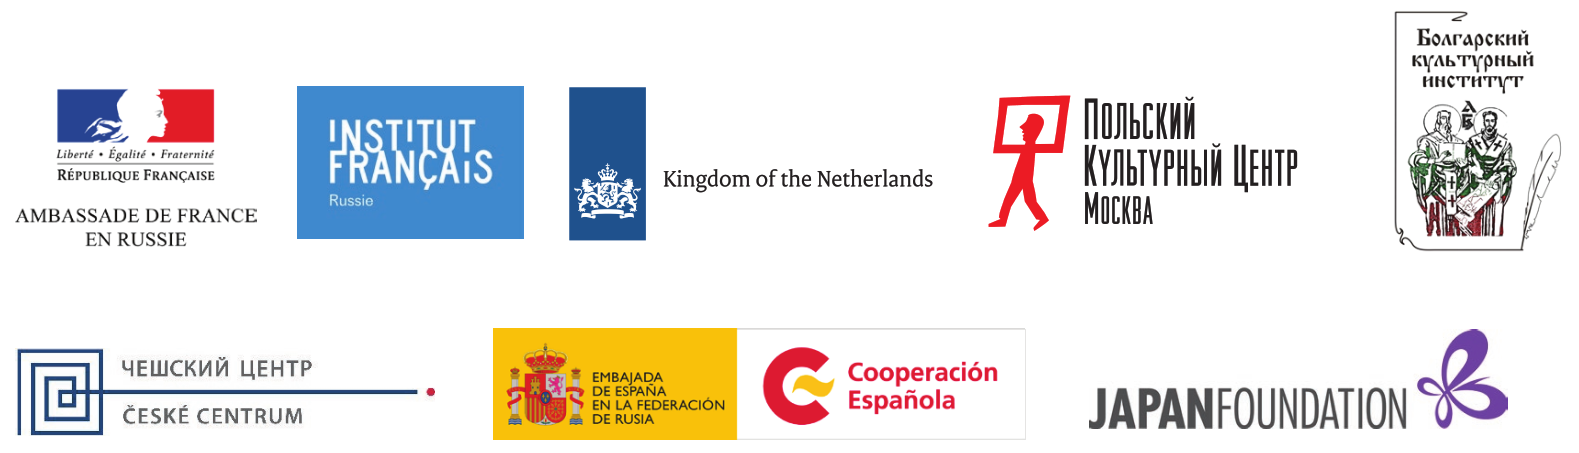 АП2018 лого посольств и КЦ